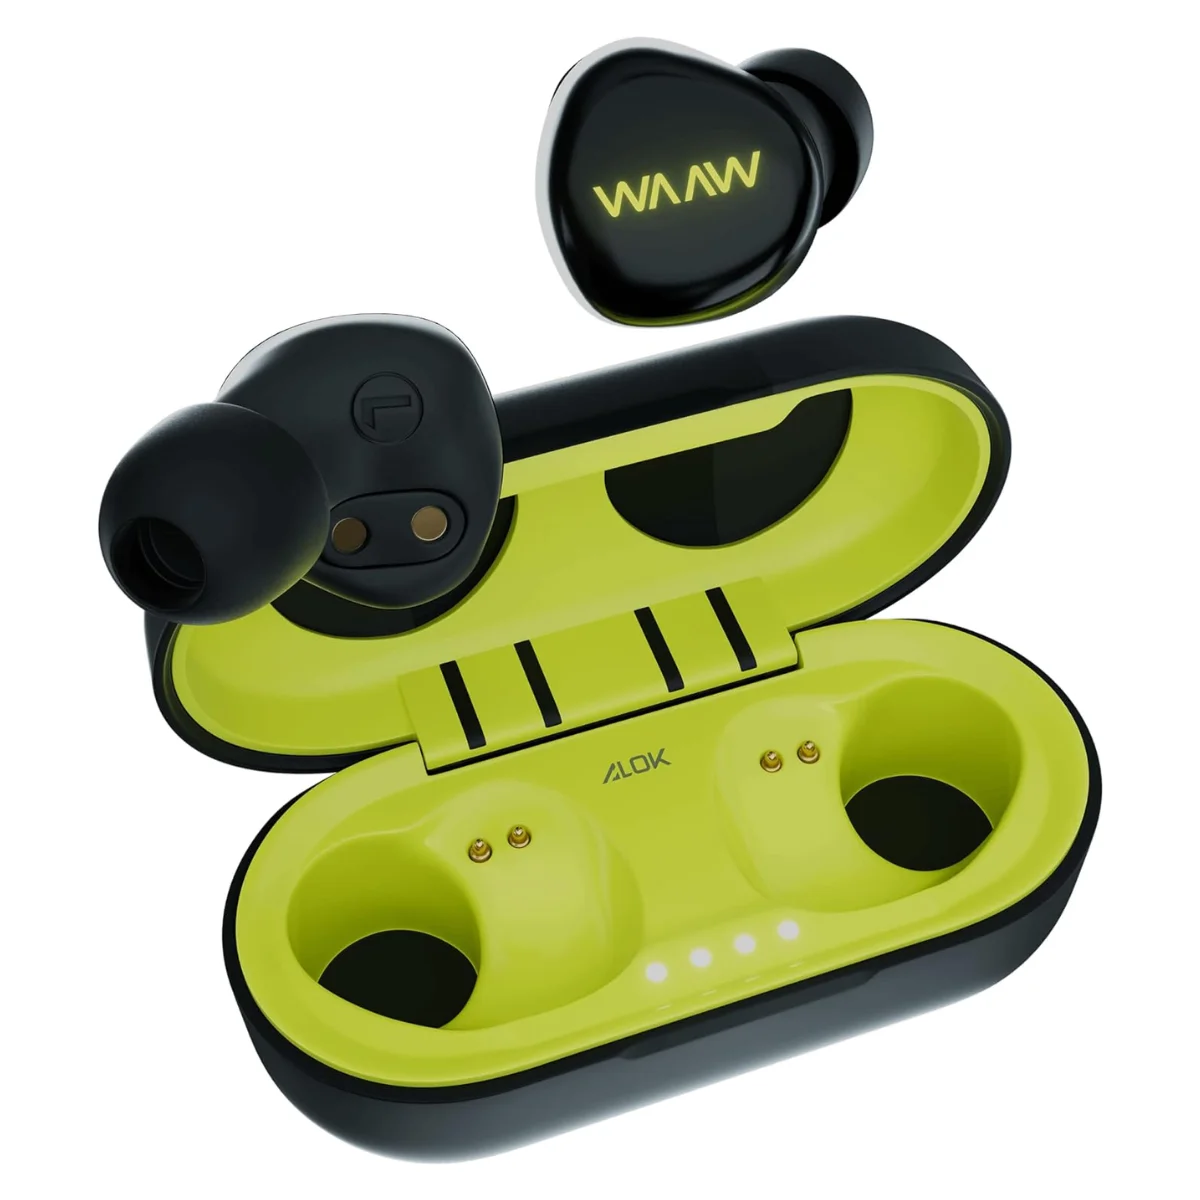 WAAW by ALOK é uma marca que tem ganhado destaque no mercado de fones de ouvido. O modelo WAAW MOB 100EB é um fone de ouvido intra-auricular sem fio que promete uma experiência de áudio excepcional. Os avanços tecnológicos têm transformado a maneira como nos relacionamos com os dispositivos eletrônicos, e os fones de ouvido não são exceção. Com o lançamento do Waaw by Alok, o mercado de fones de ouvido Bluetooth intra-auriculares sem fio deu um salto significativo em termos de qualidade e funcionalidade.